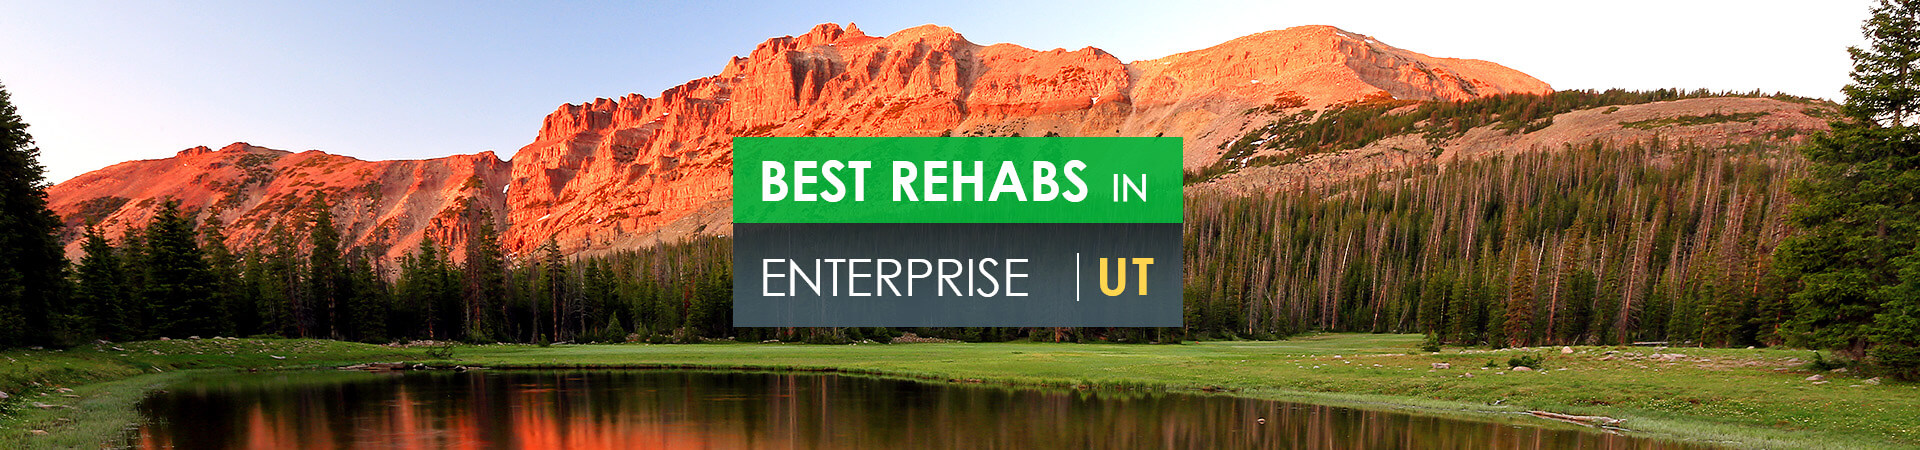 Best rehabs in Enterprise, UT